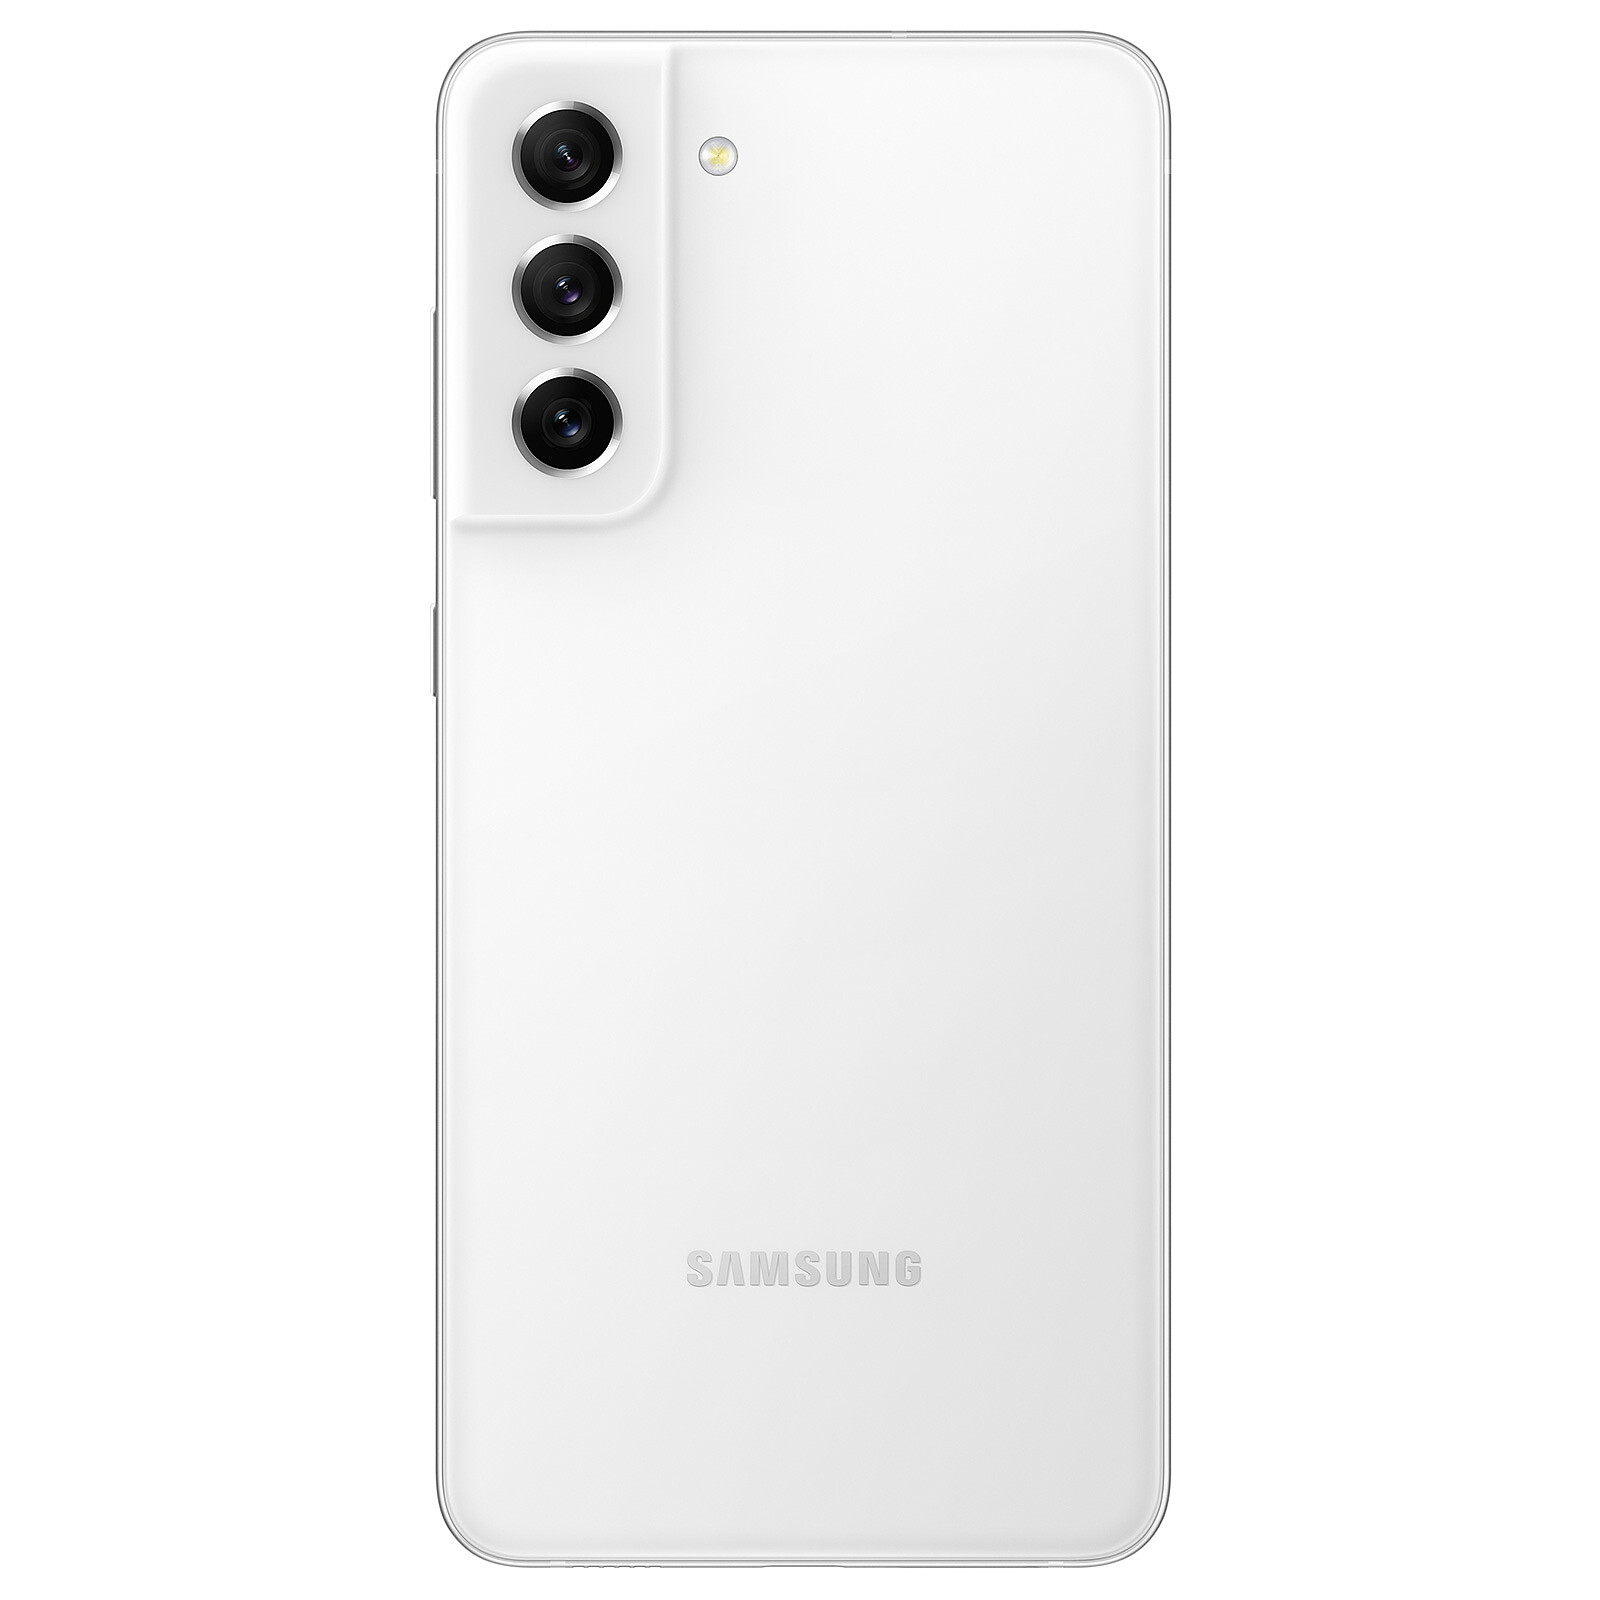 Pack Smartphone Samsung Galaxy S21 FE 5G 128Go Graphite avec Coque